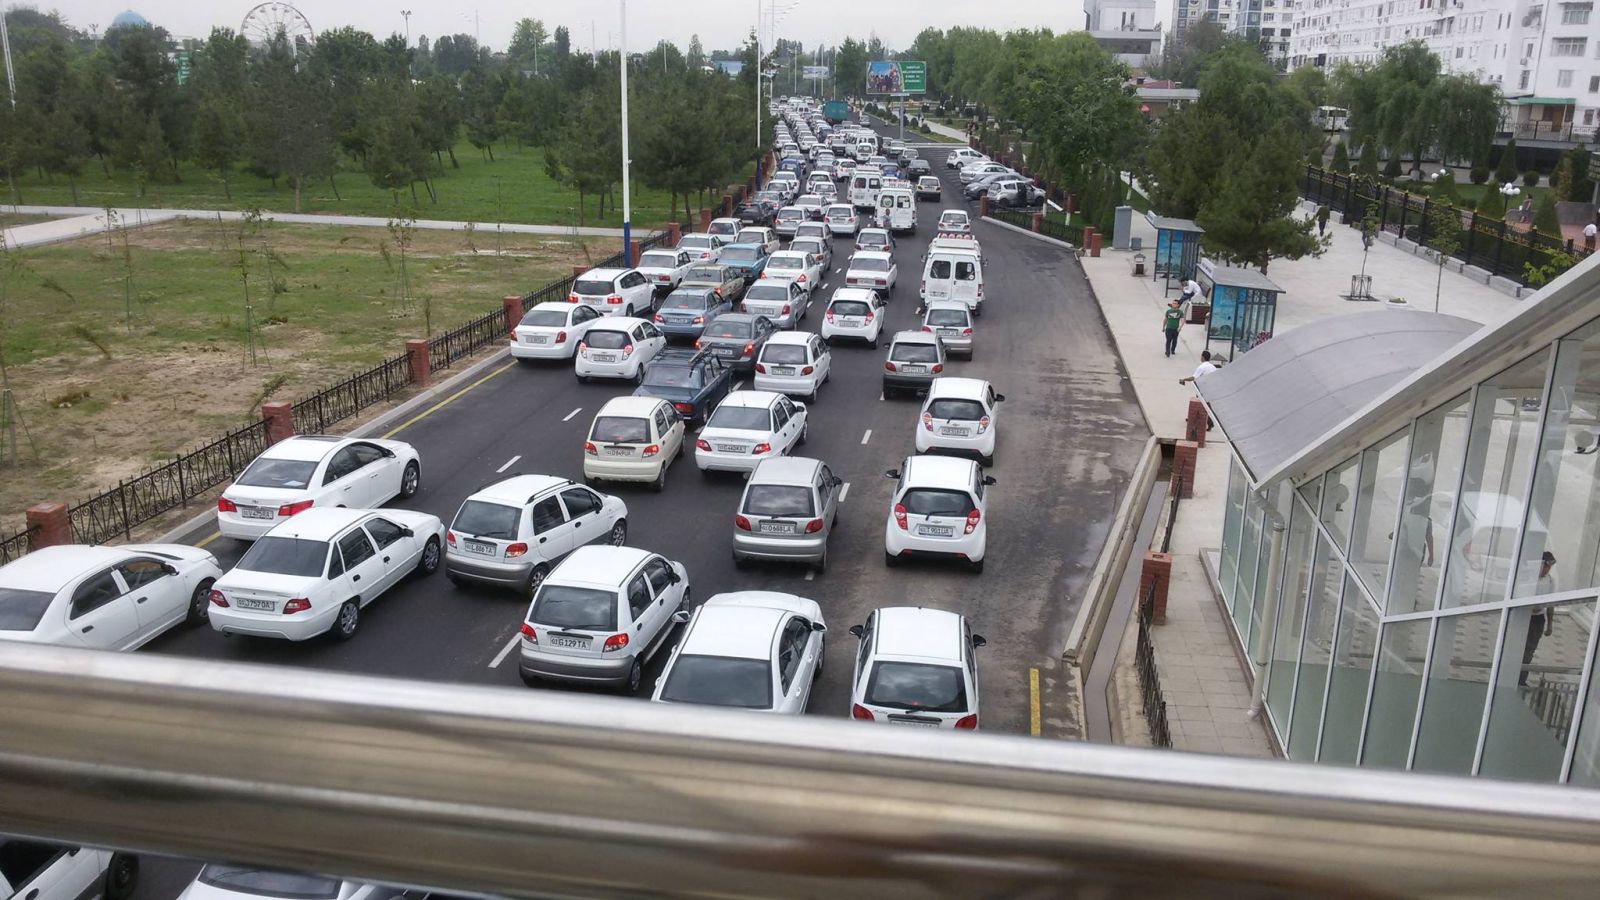 Показать на картах: какие дороги нужно открыть в Ташкенте? 